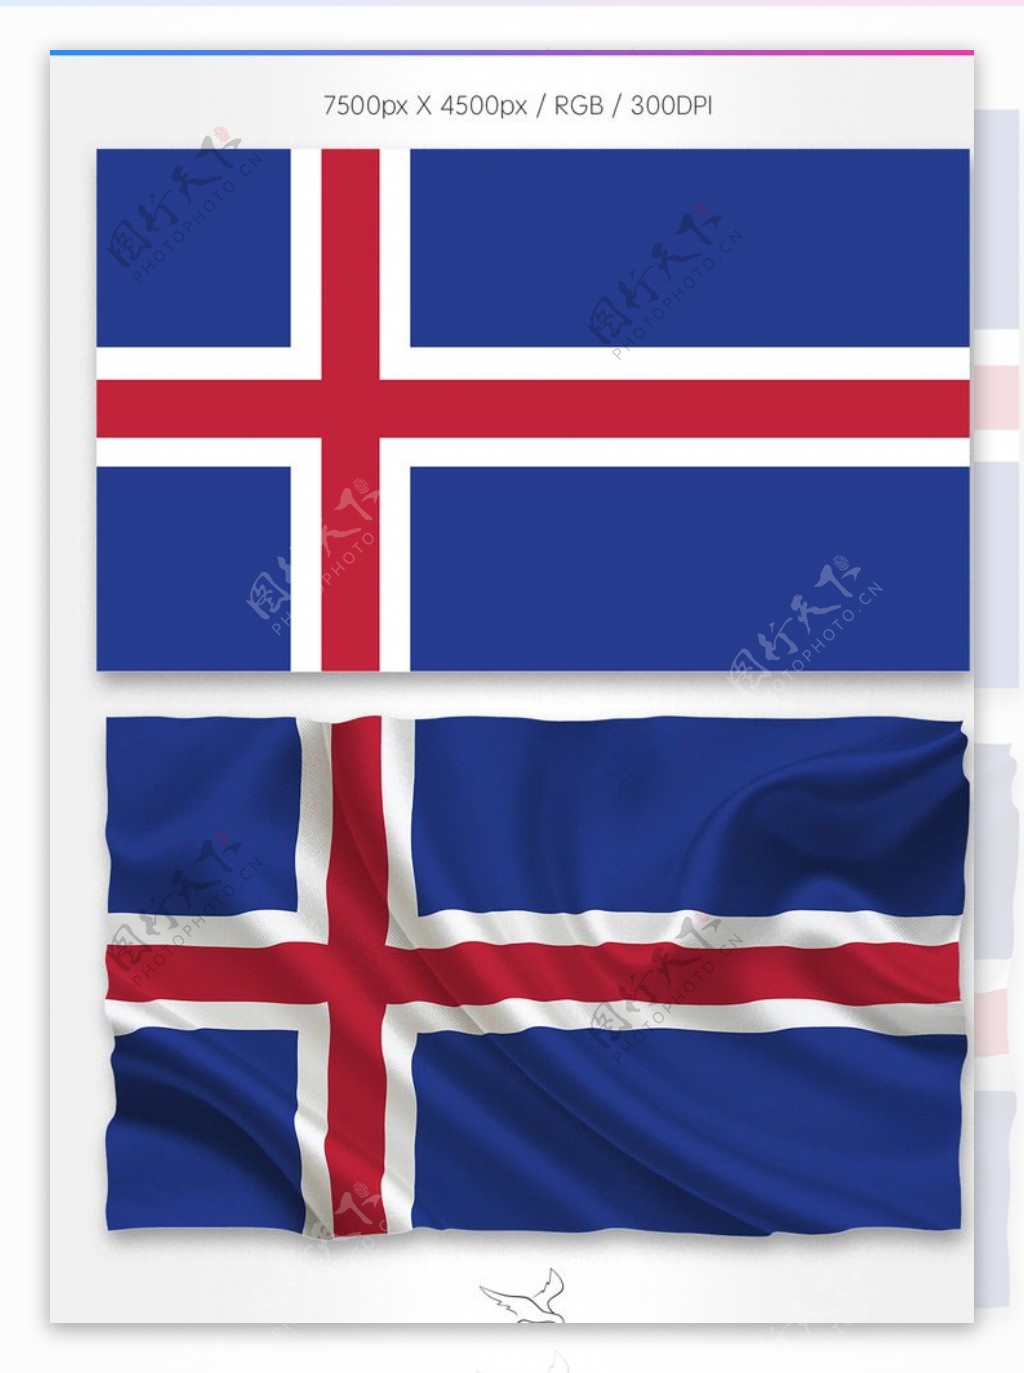 冰岛国旗分层psd